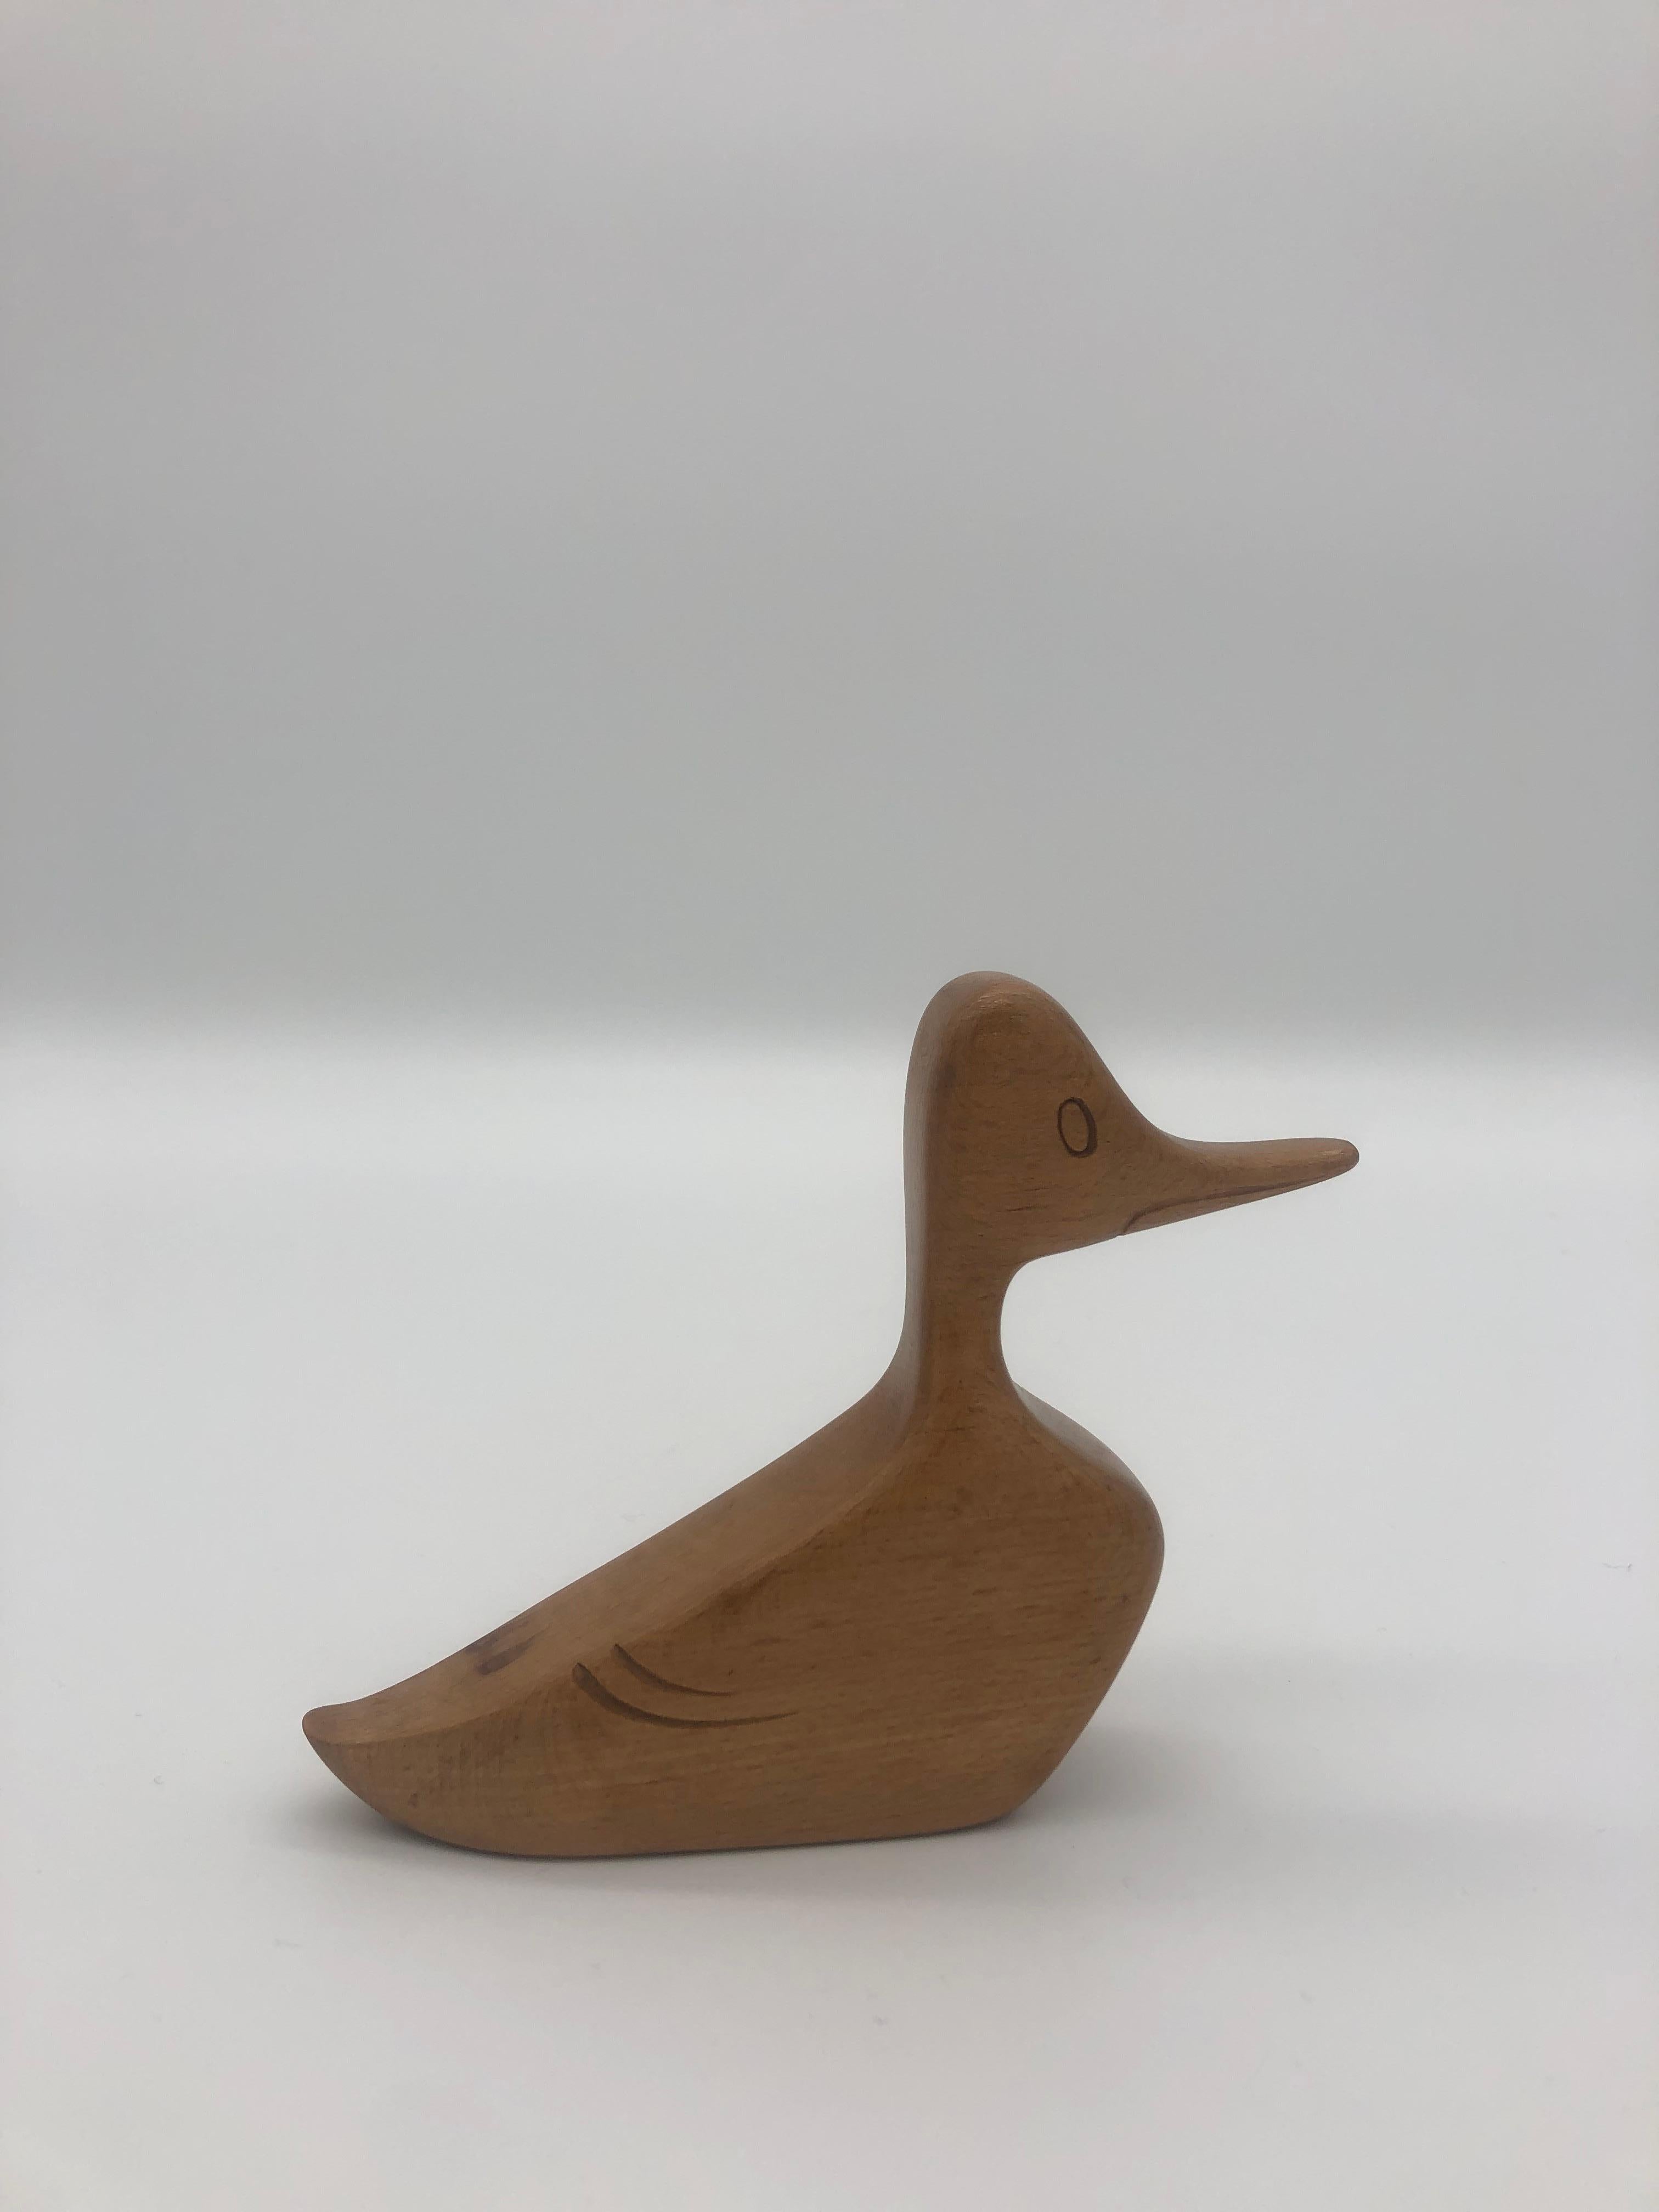 Wooden Duck by Franz Hagenauer, Vienna, Austria For Sale 5